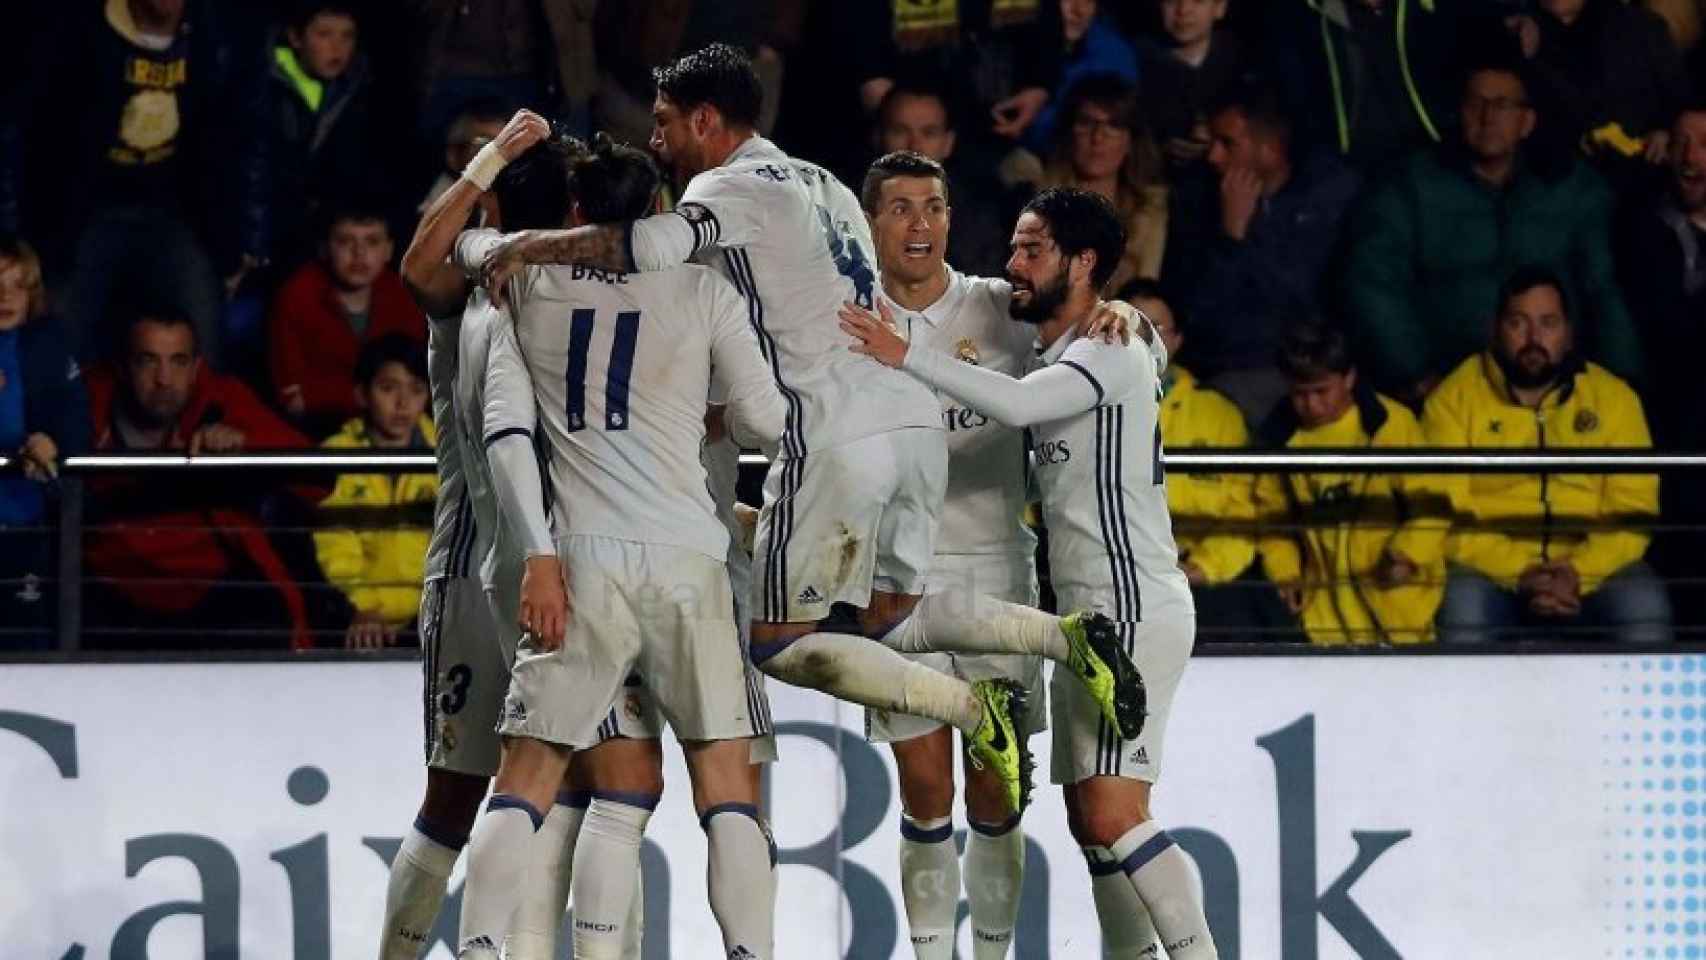 El Real Madrid celebra el gol de Morata